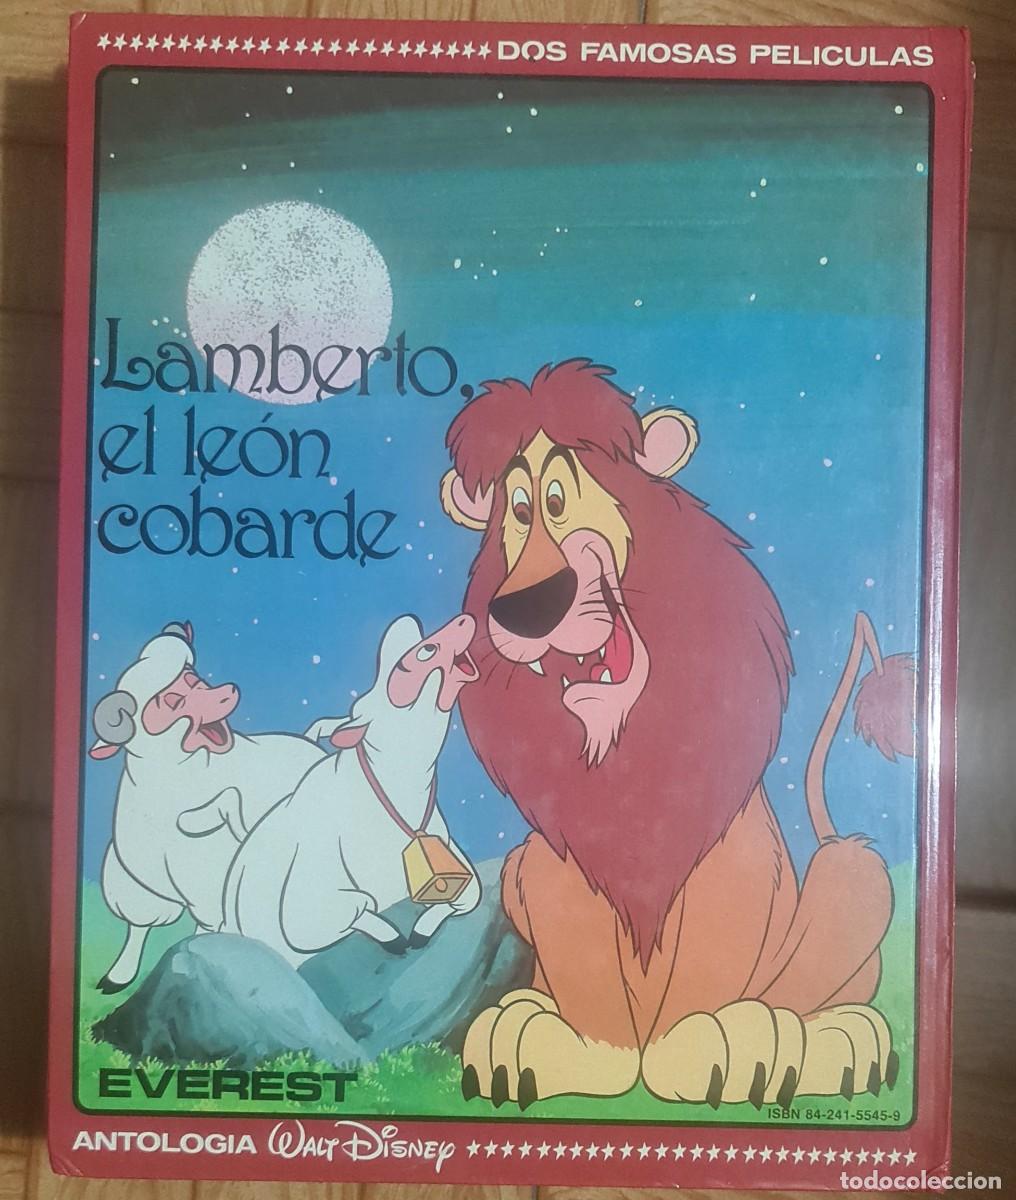 libro usado: Tarón y el caldero mágico - Lamberto el león cobarde